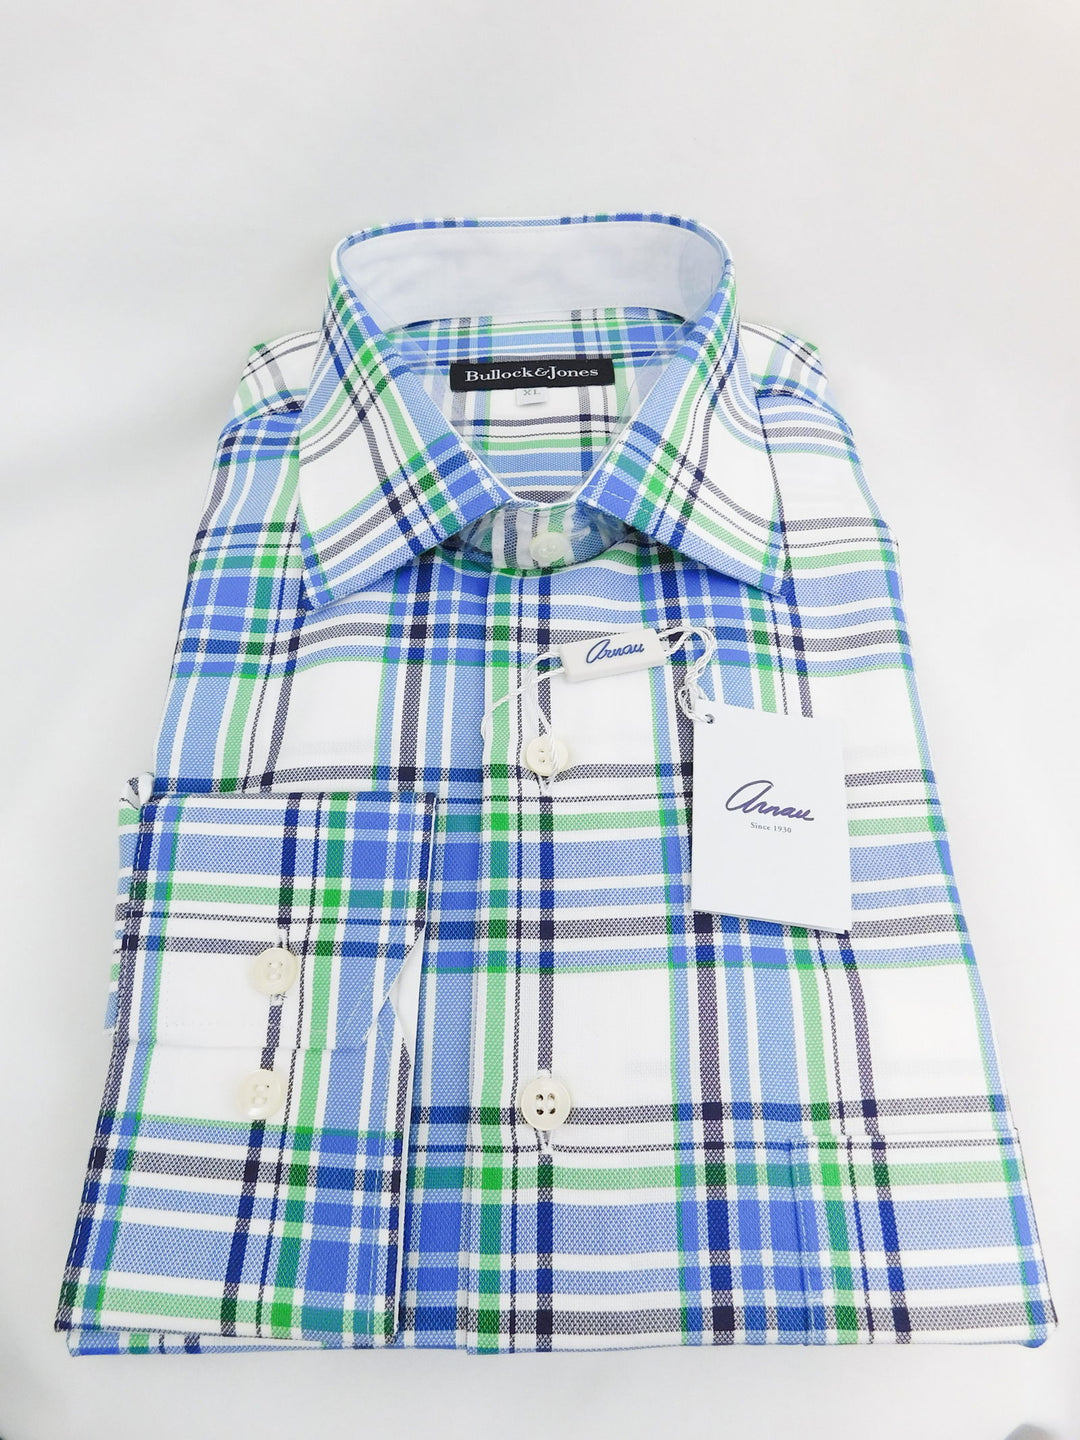 Bullock & Jones Lucas Plaid Shirt - Size XL - The Kennedy Collective Thrift - 